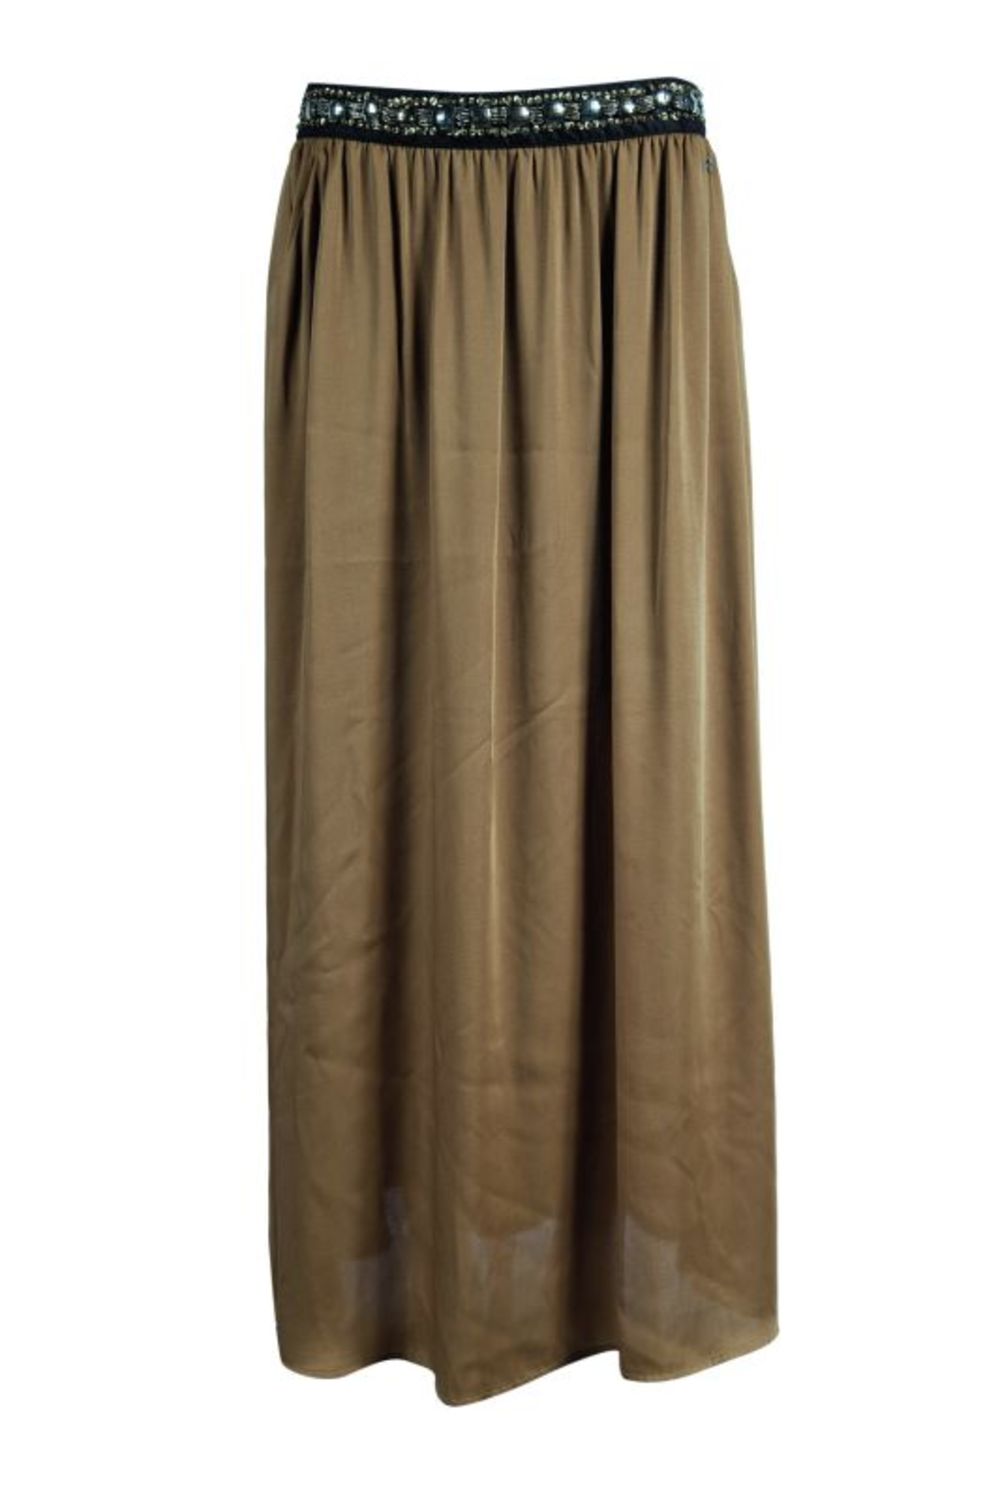 Suknja Gaudi, cena: 11.490 din